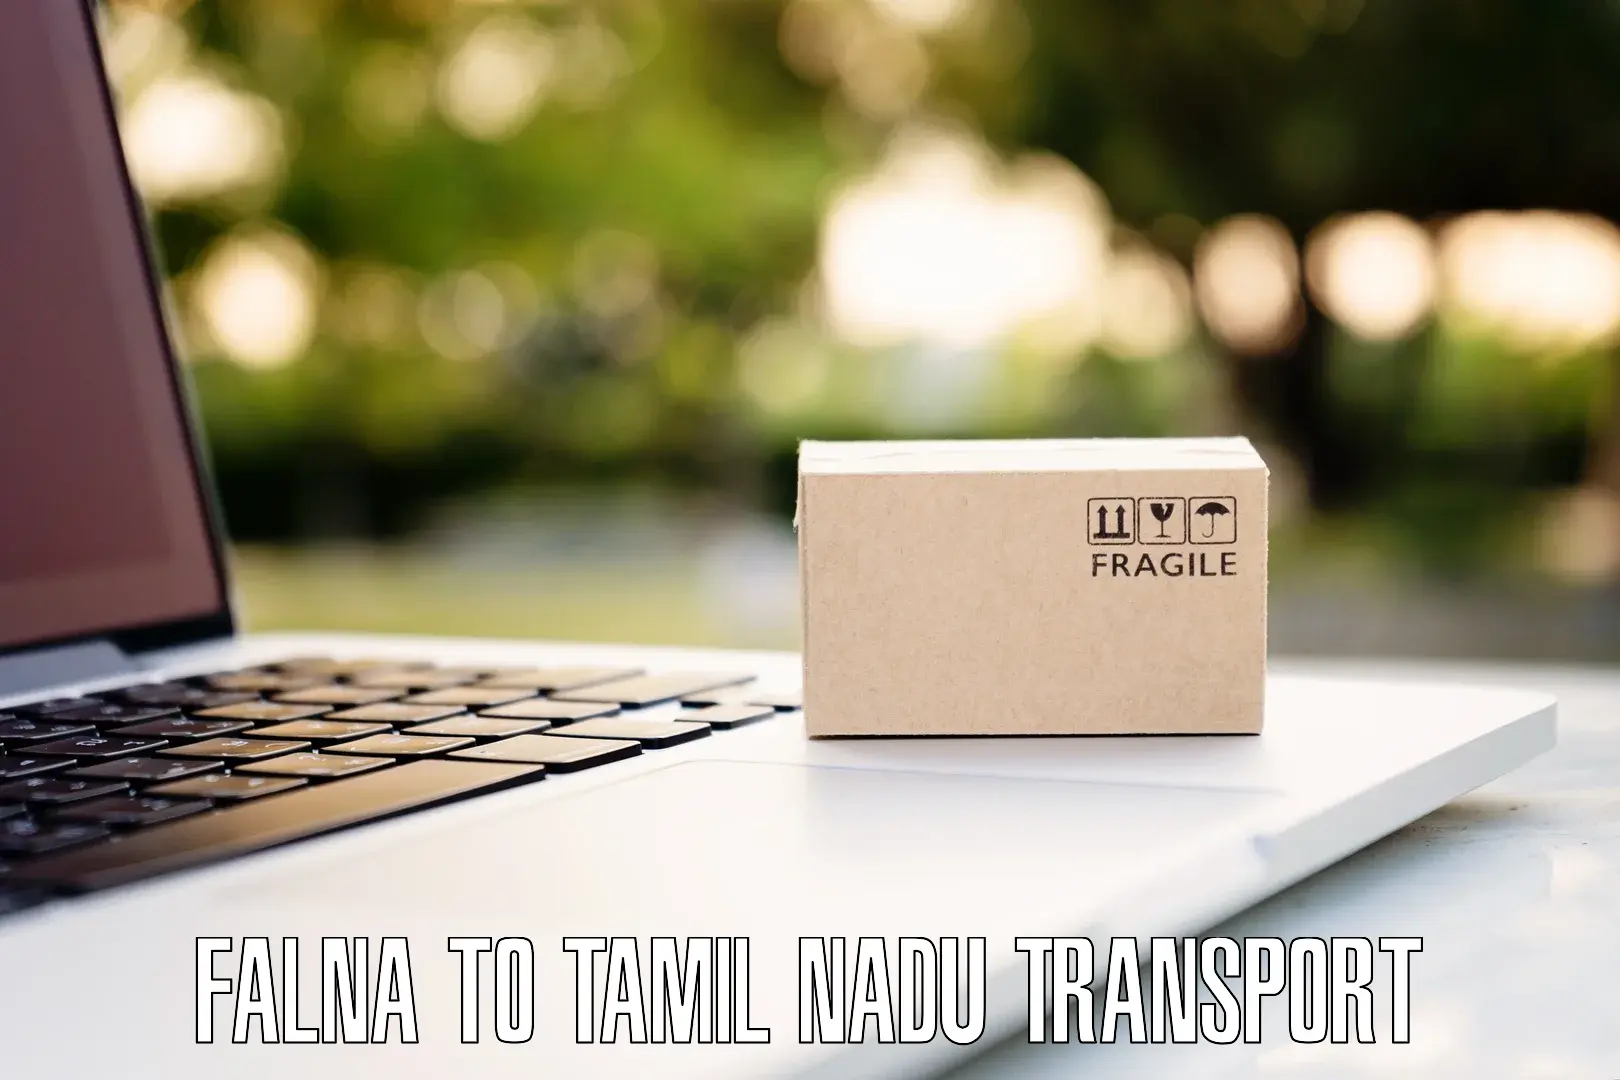 Daily parcel service transport Falna to Tiruturaipundi